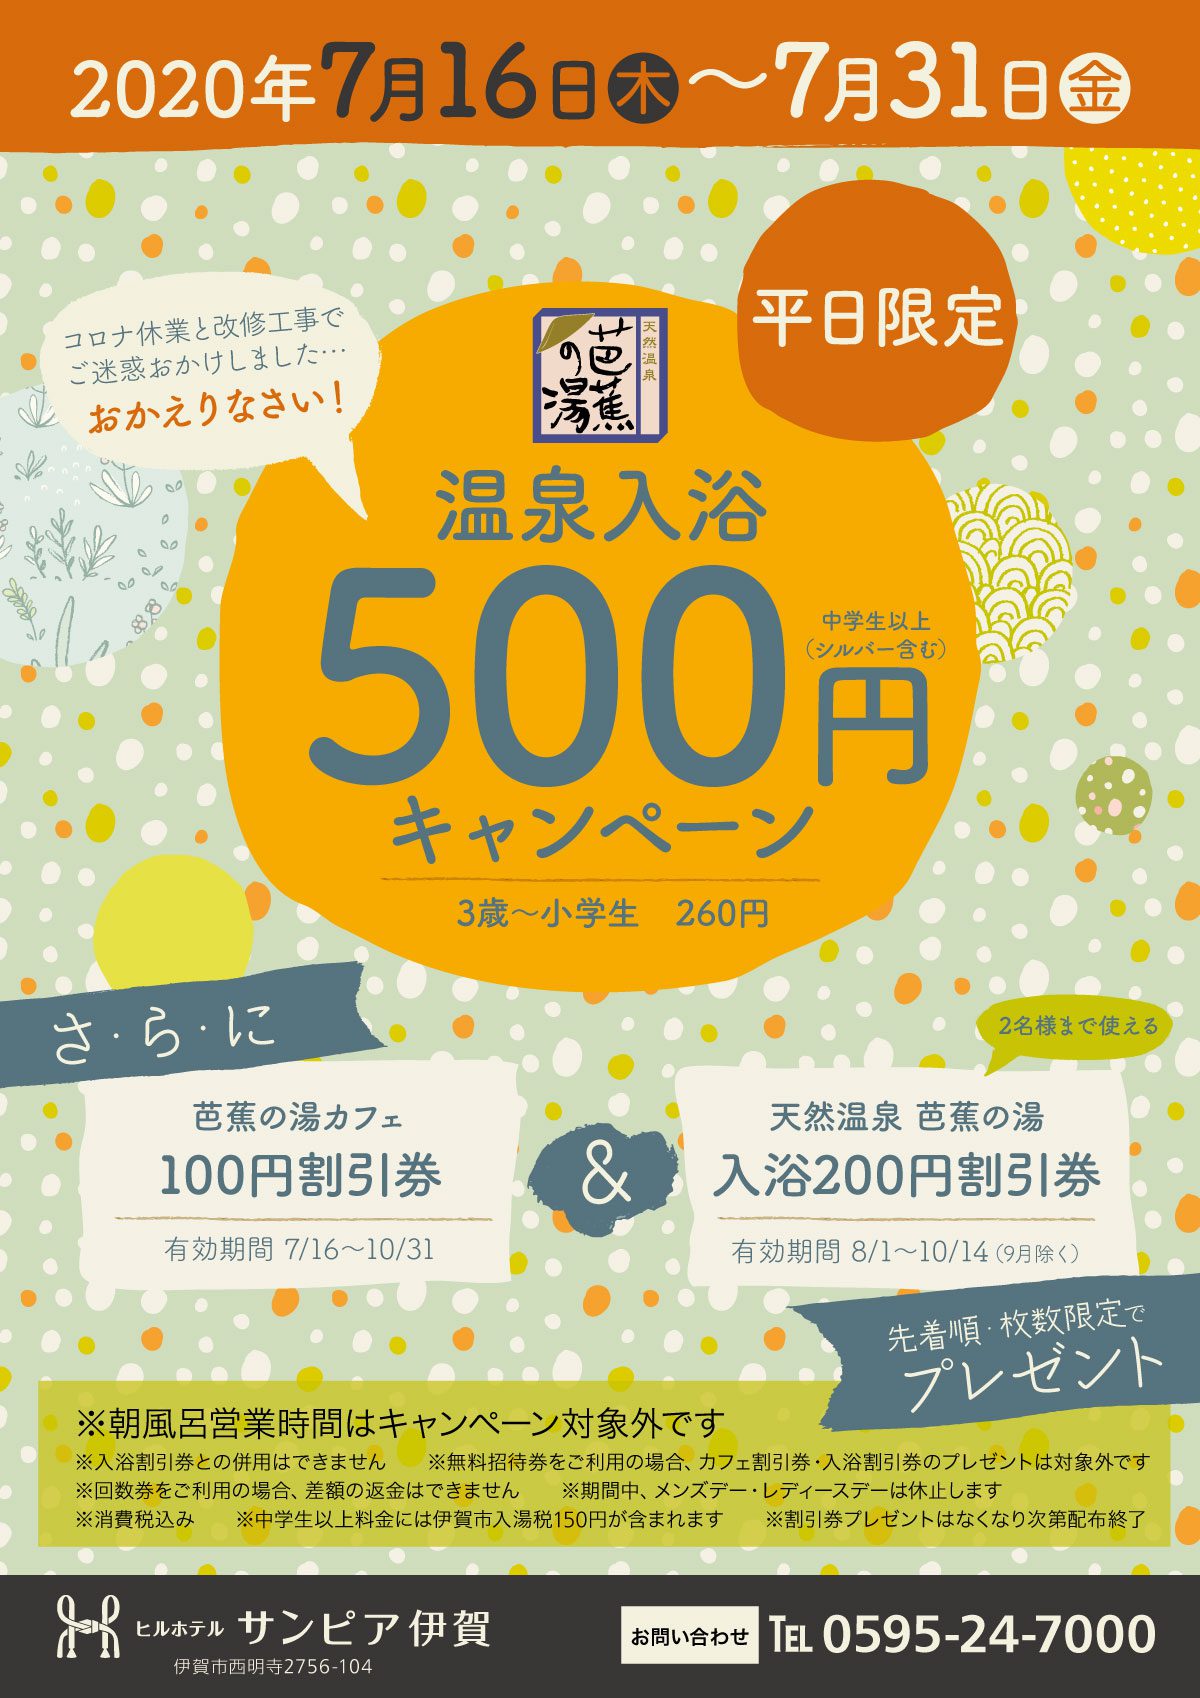 2020年7月16日(木)から7月31日(金)の間の平日限定、温泉入浴500円キャンペーンを実施します。小学生以下は260円。